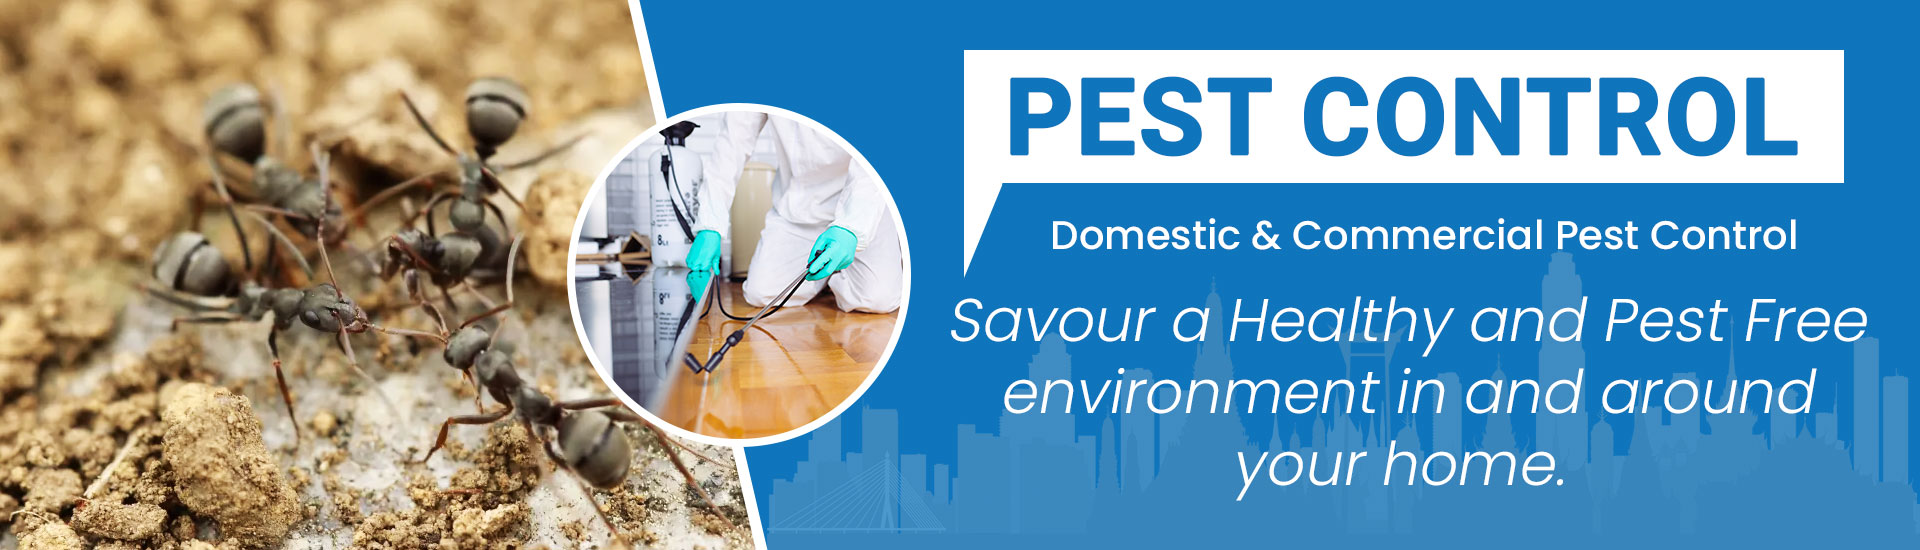 Home Pest Control, 